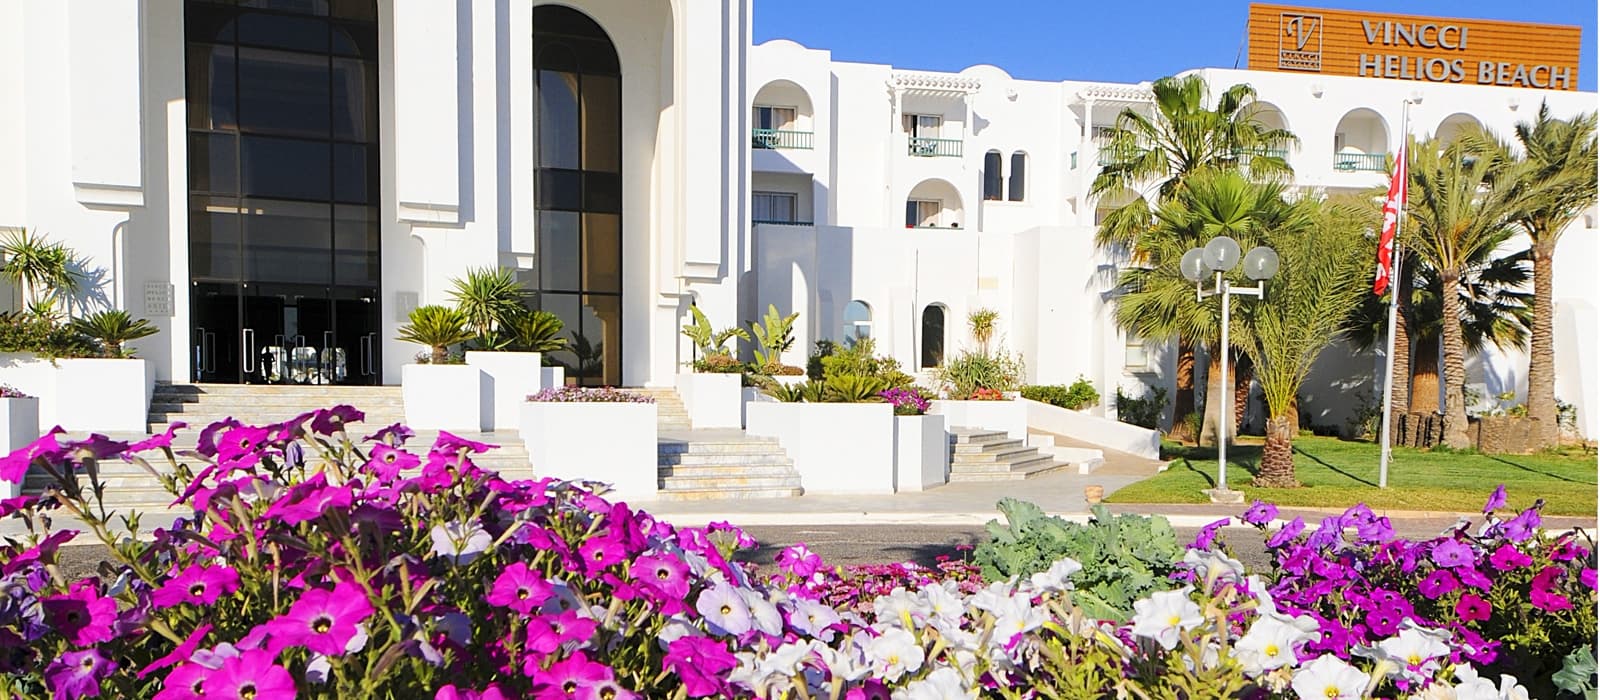 Helios Beach Hotel Djerba - Vincci Hoteles